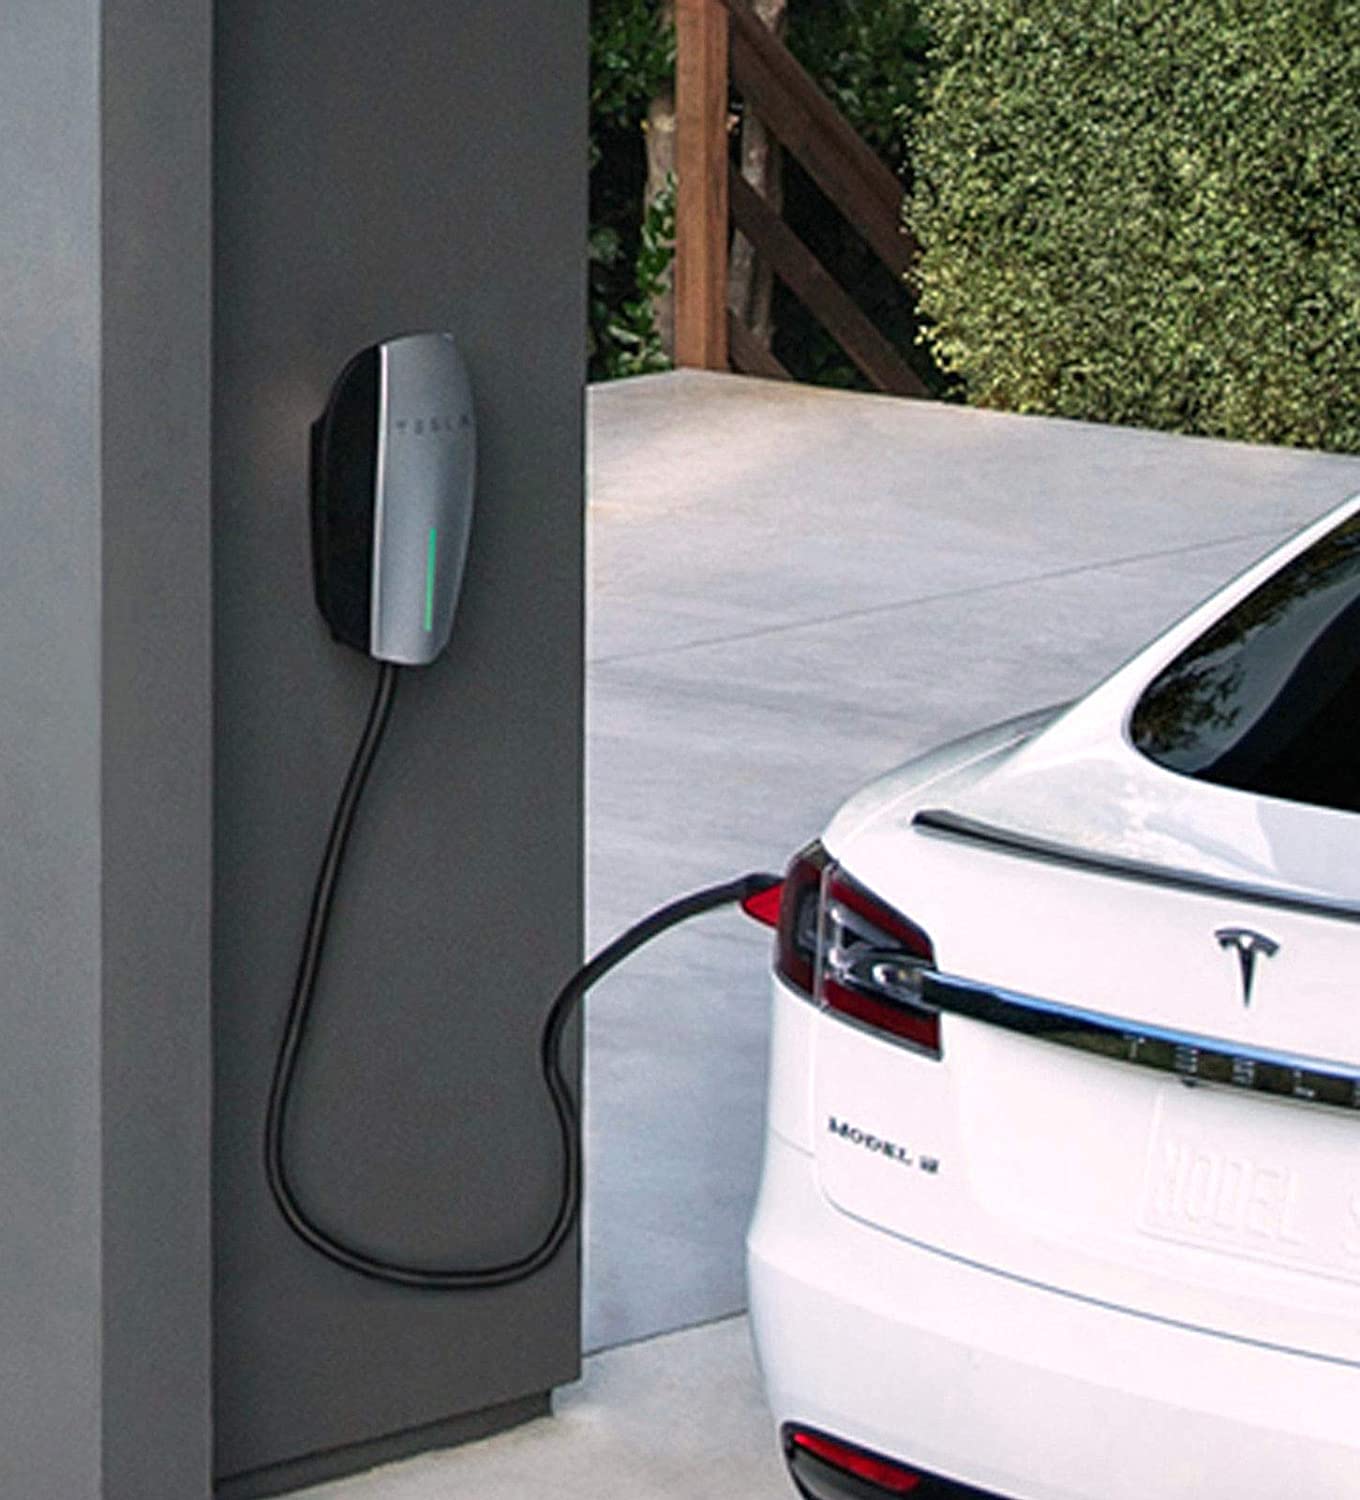 Tesla Enters EV Charger Market for Non-Tesla Vehicles